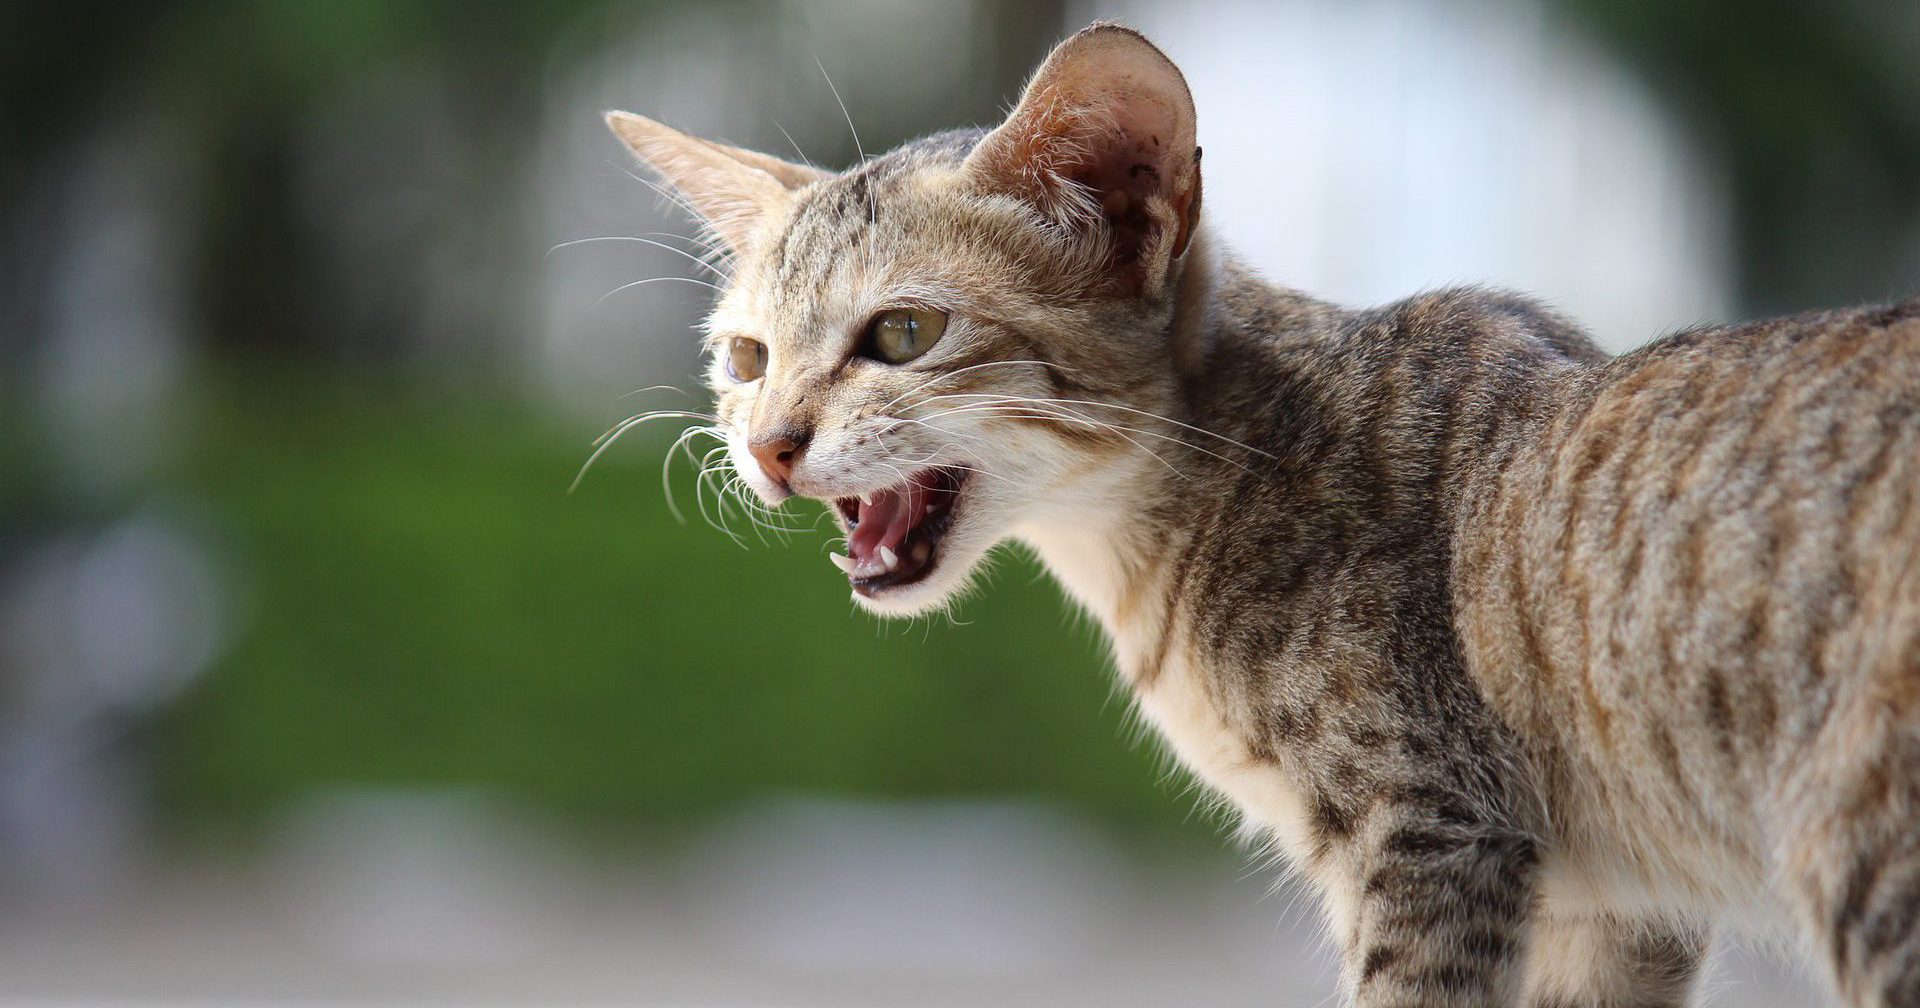 จริงดิ…เชื้อปรสิตเปลี่ยนพฤติกรรม “ทาสแมว” ให้เป็นคนกล้าเสี่ยงมากขึ้น!-ข่าว BBC